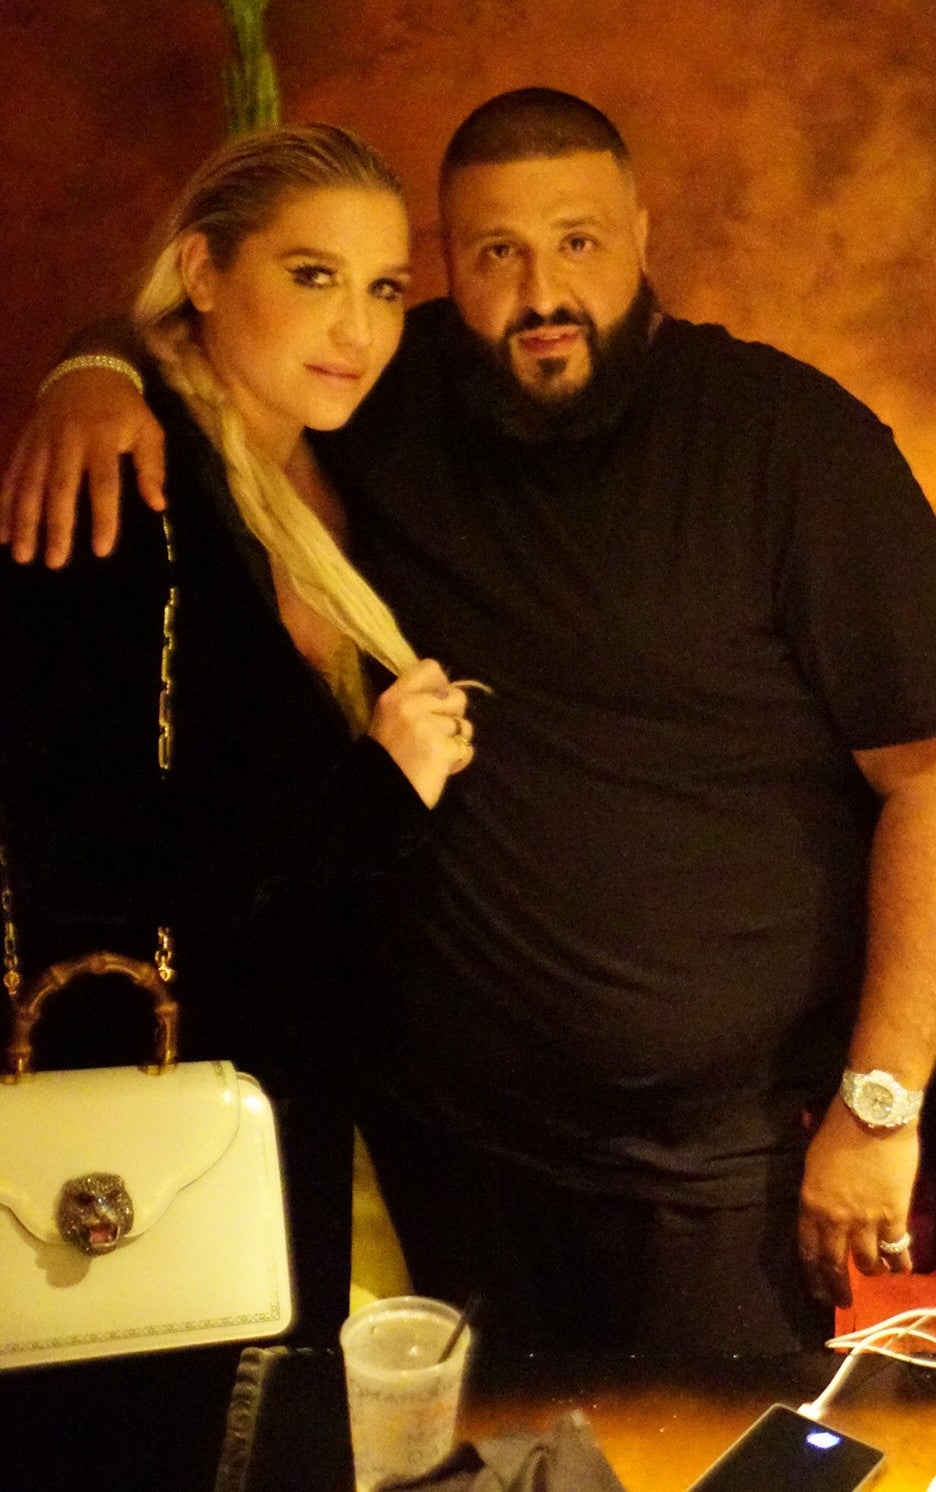 Kesha and DJ Khaled